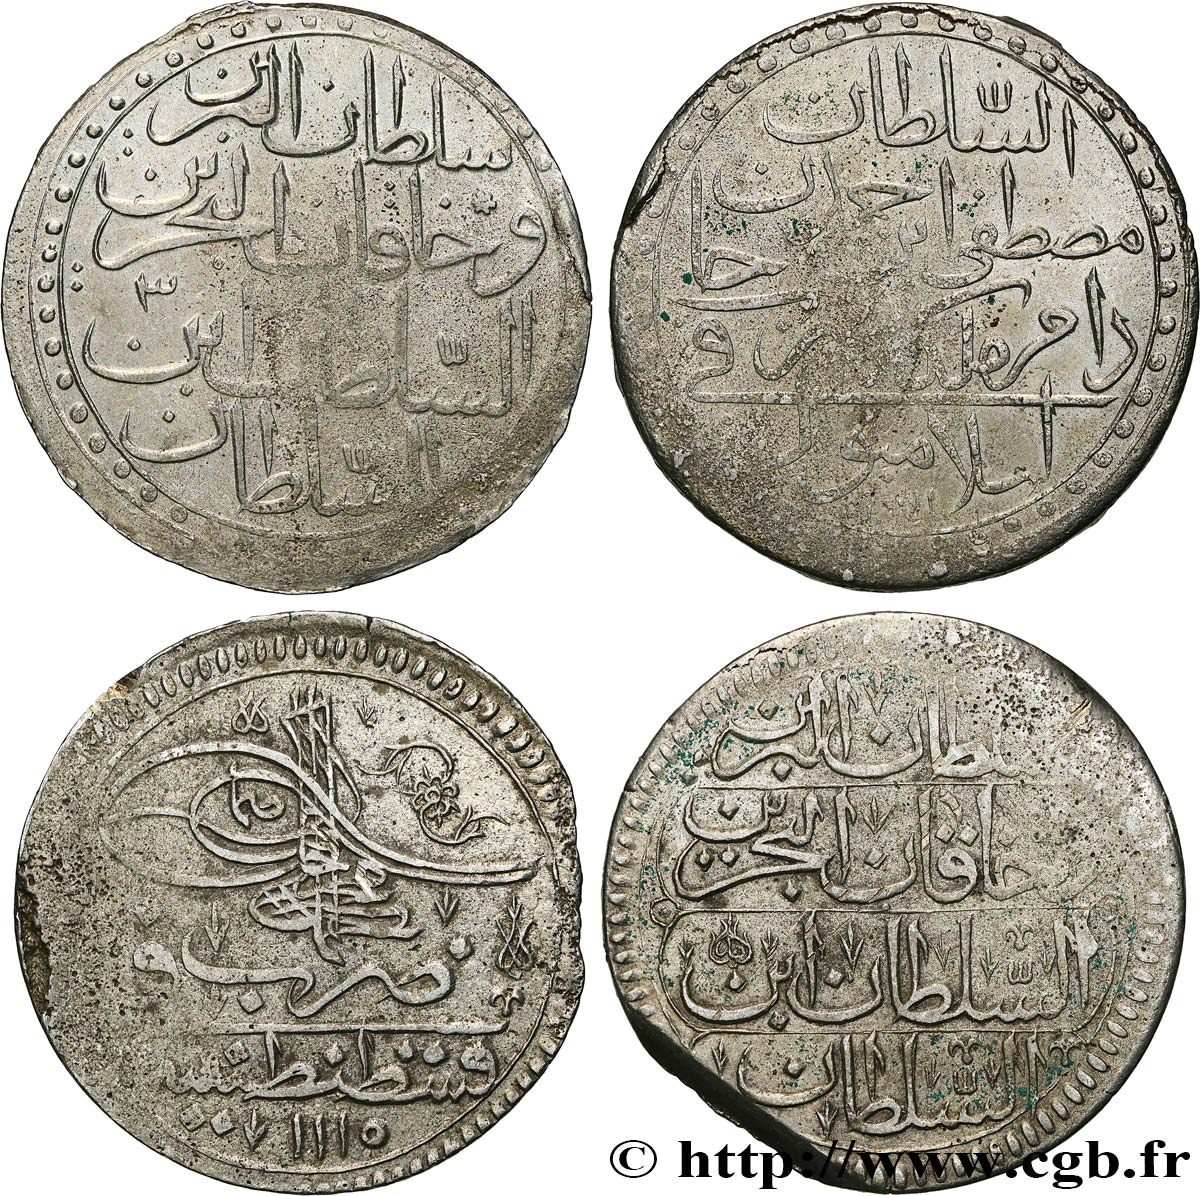 LOTS Lot de deux monnaies ottomanes n.d.  TTB 